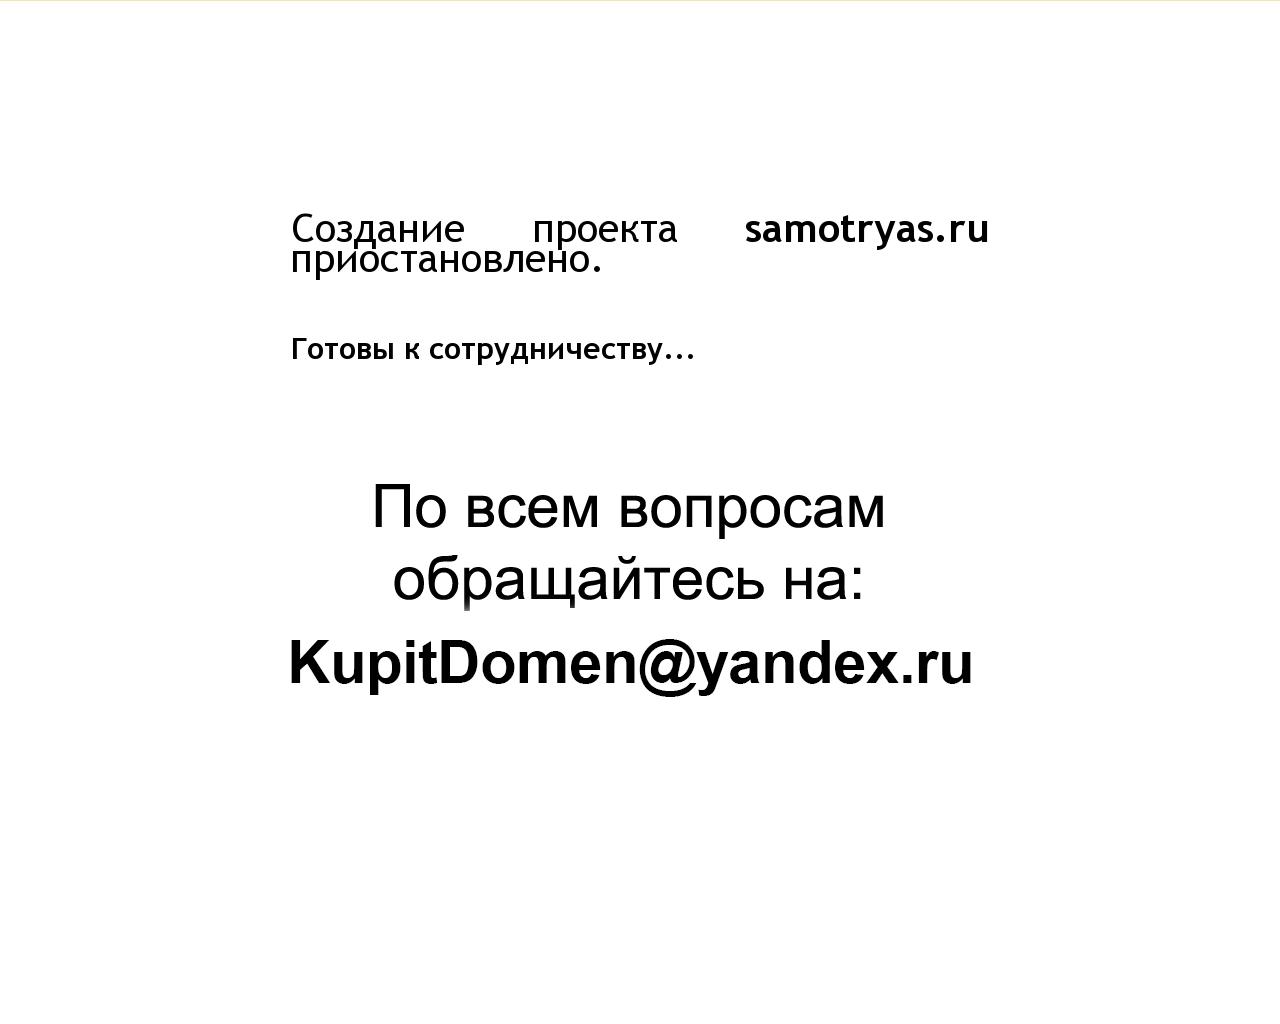 Изображение сайта samotryas.ru в разрешении 1280x1024